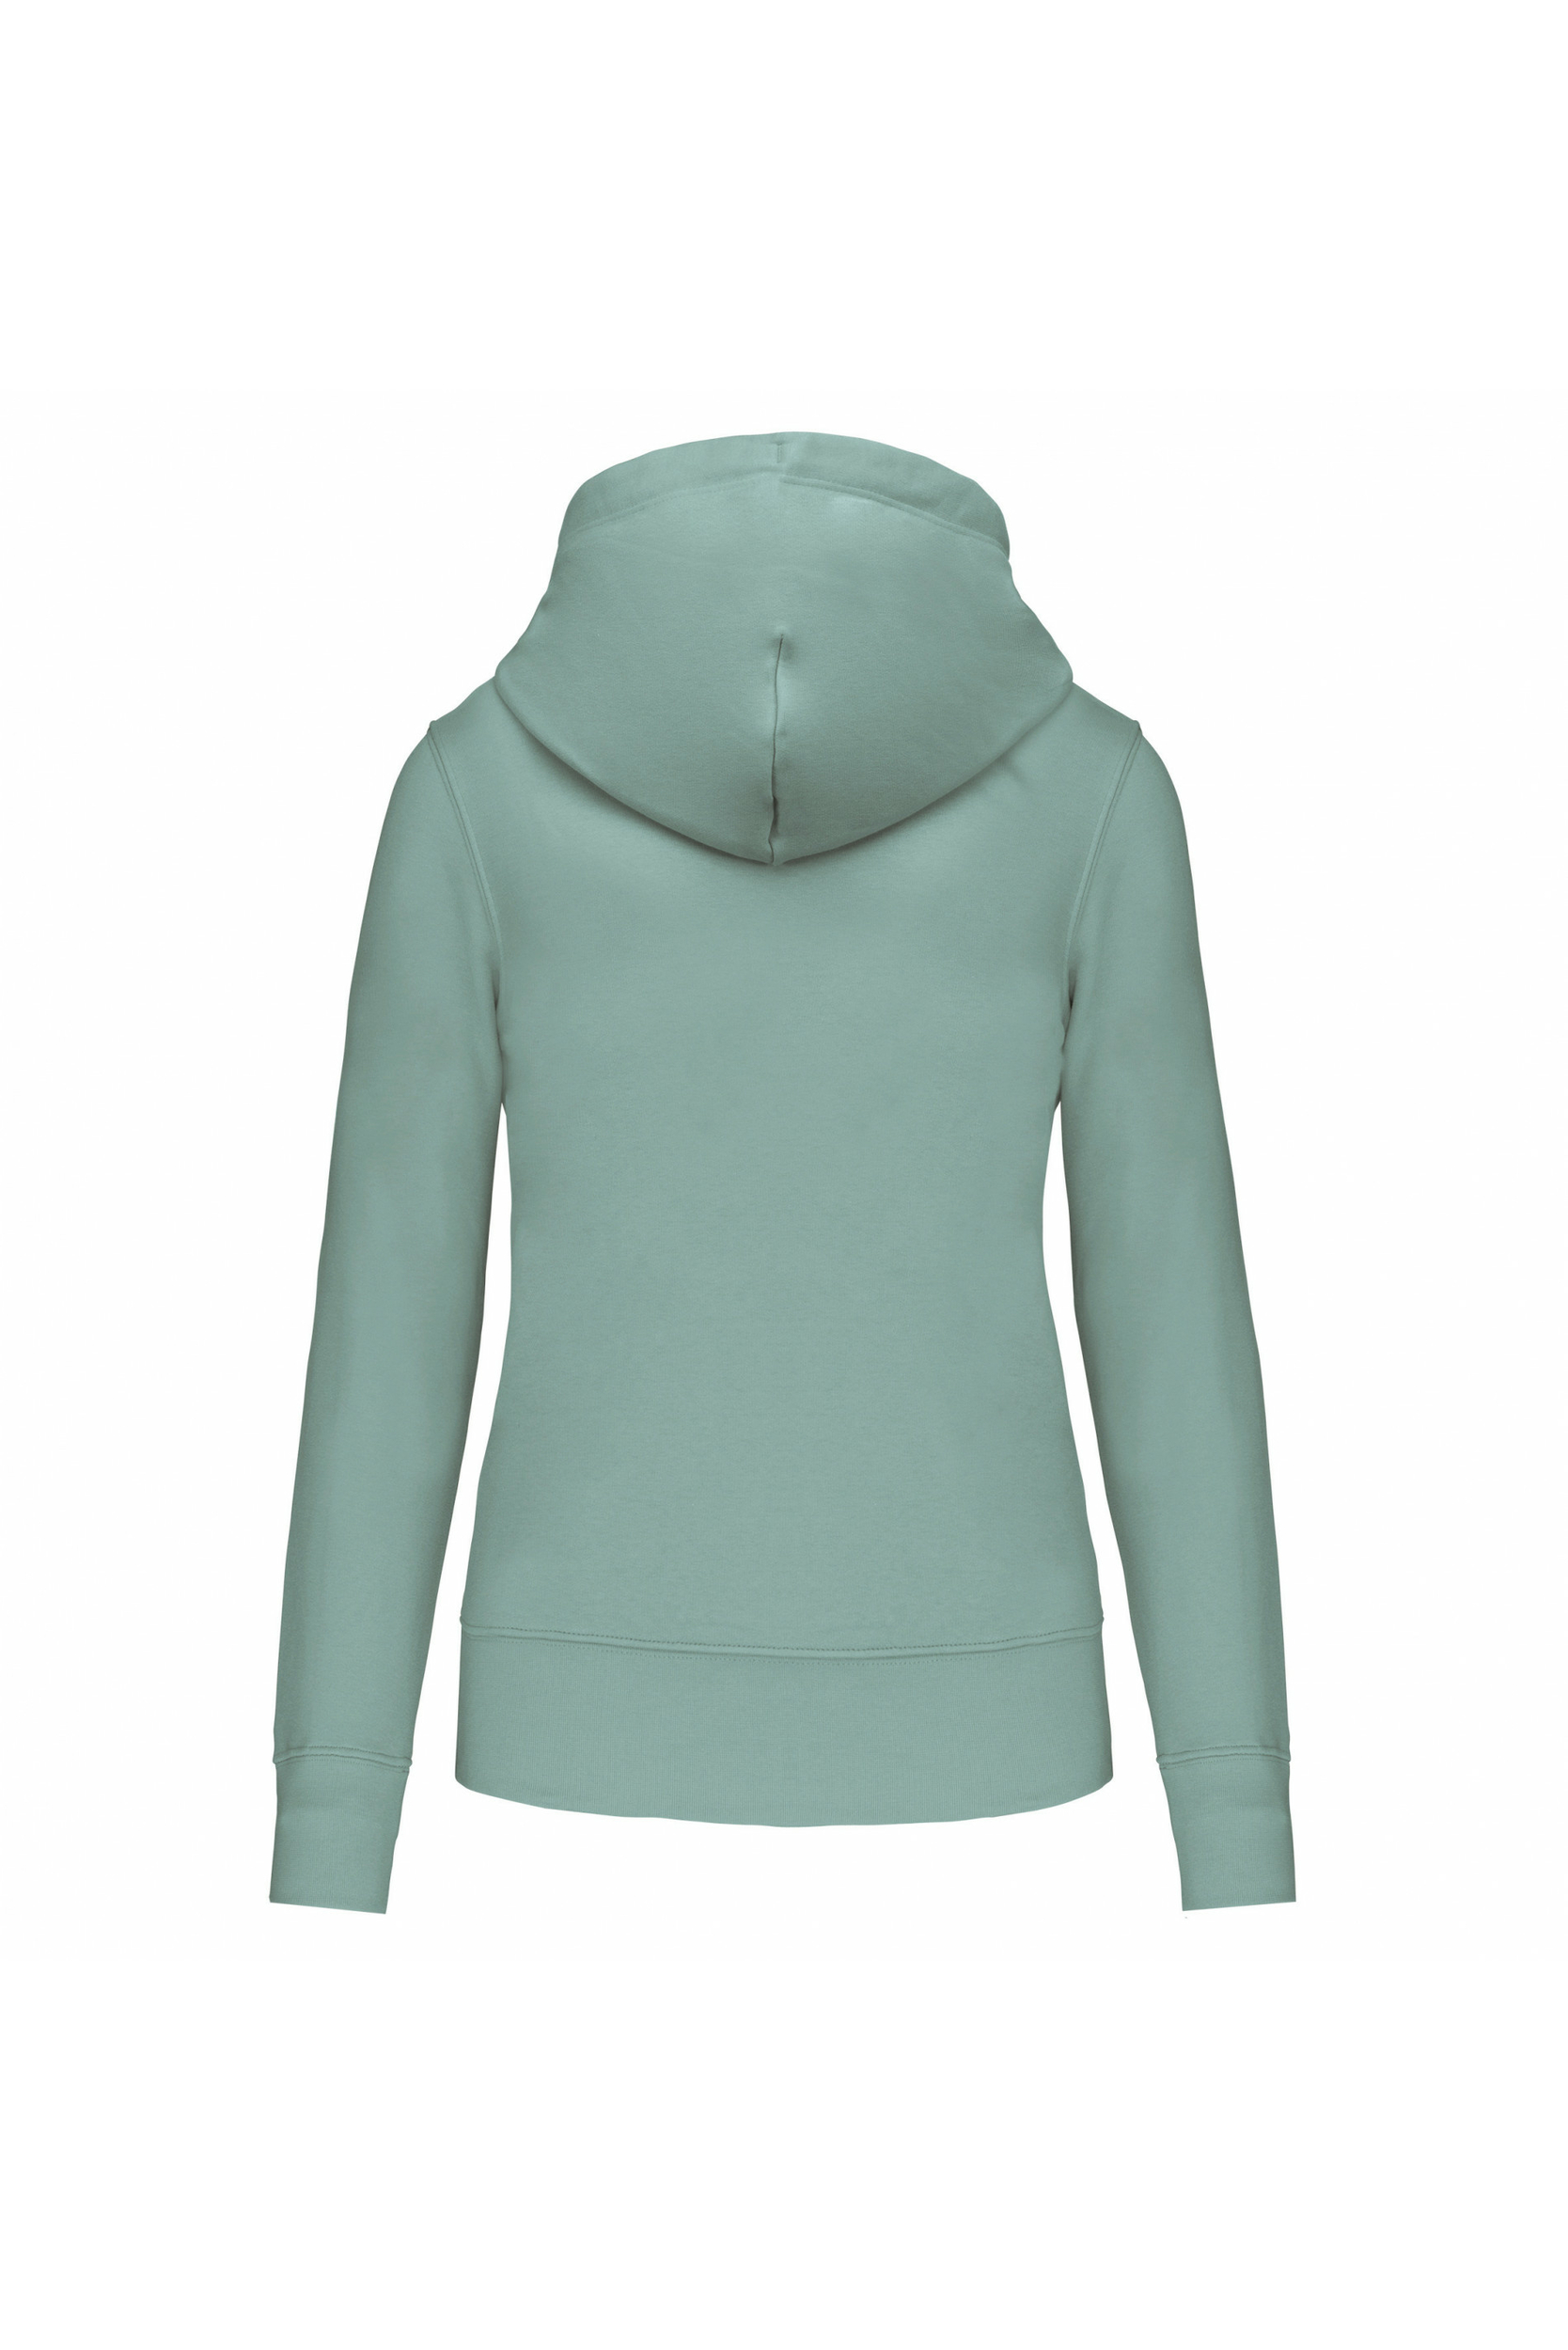 Sweat-shirt à capuche écoresponsable Femme -Vert d'eau -Conçu à partir de  85% de coton biologique et 15% de polyester recyclé.